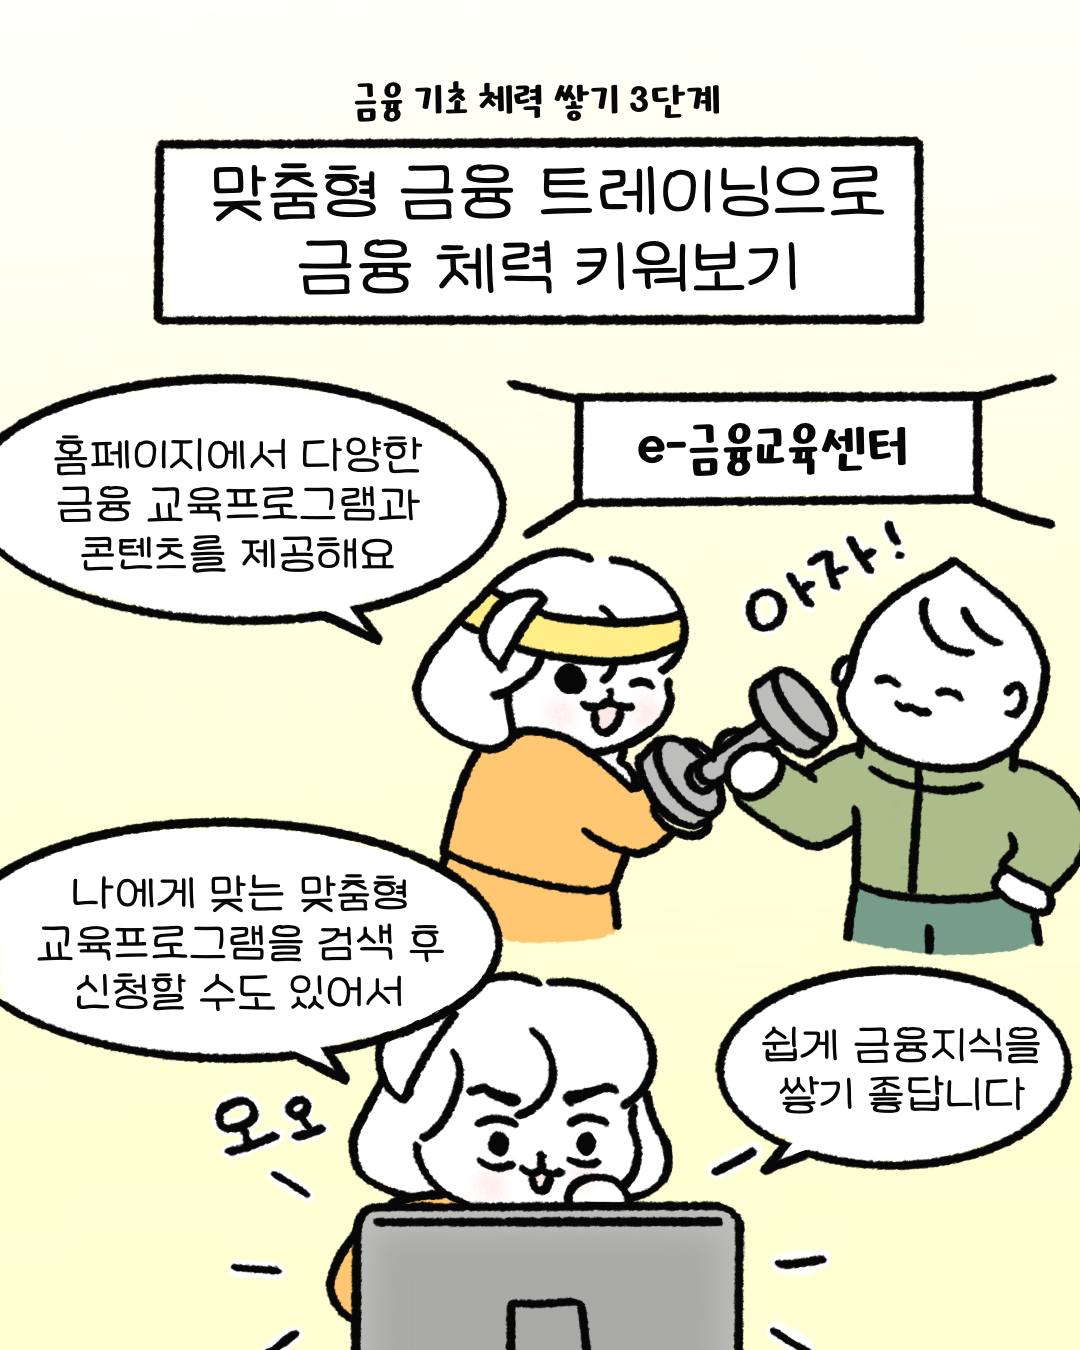 서울에서 자취생으로 살아남기까지...